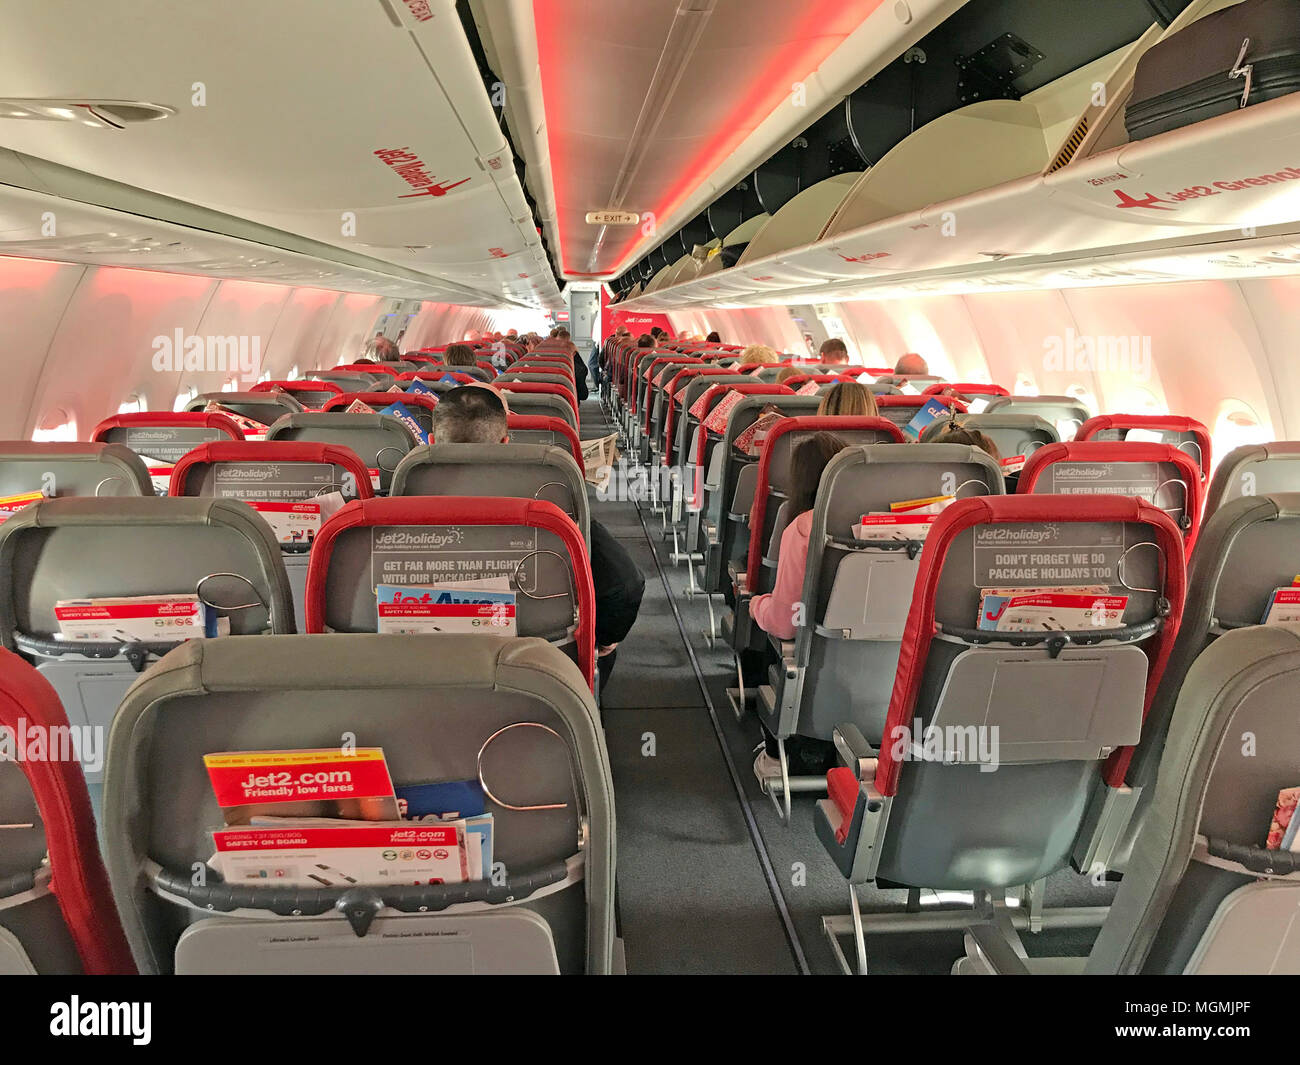 Intérieur de la cabine Boeing 737 Jet2, QUI est la mieux notée pour les vols et les vacances britanniques Banque D'Images